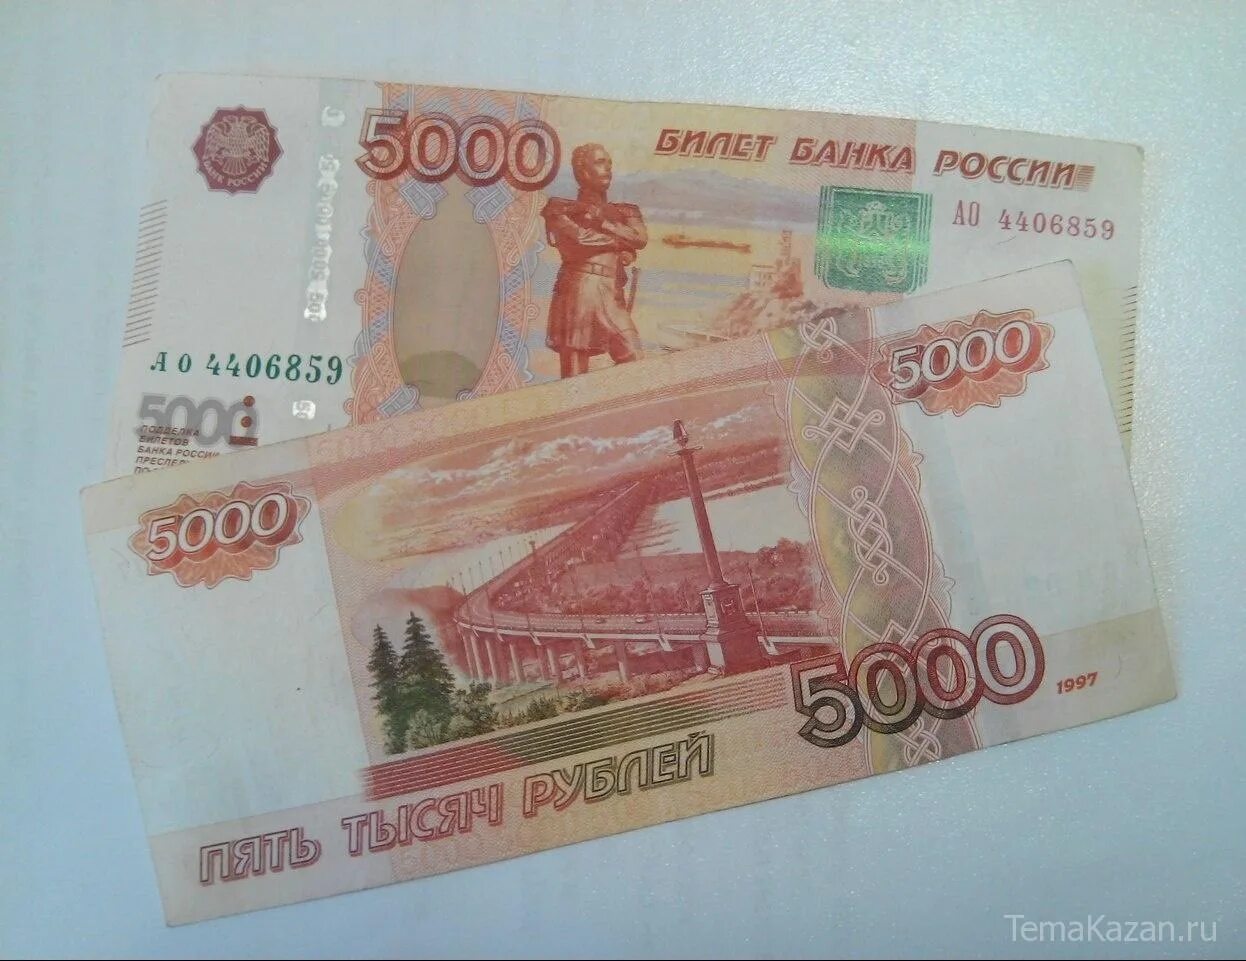 3 5000 000. 10 Тысяч рублей. 10 Тысяч рублей купюра. Десять тысяч рублей. 10 000 Тысяч рублей.